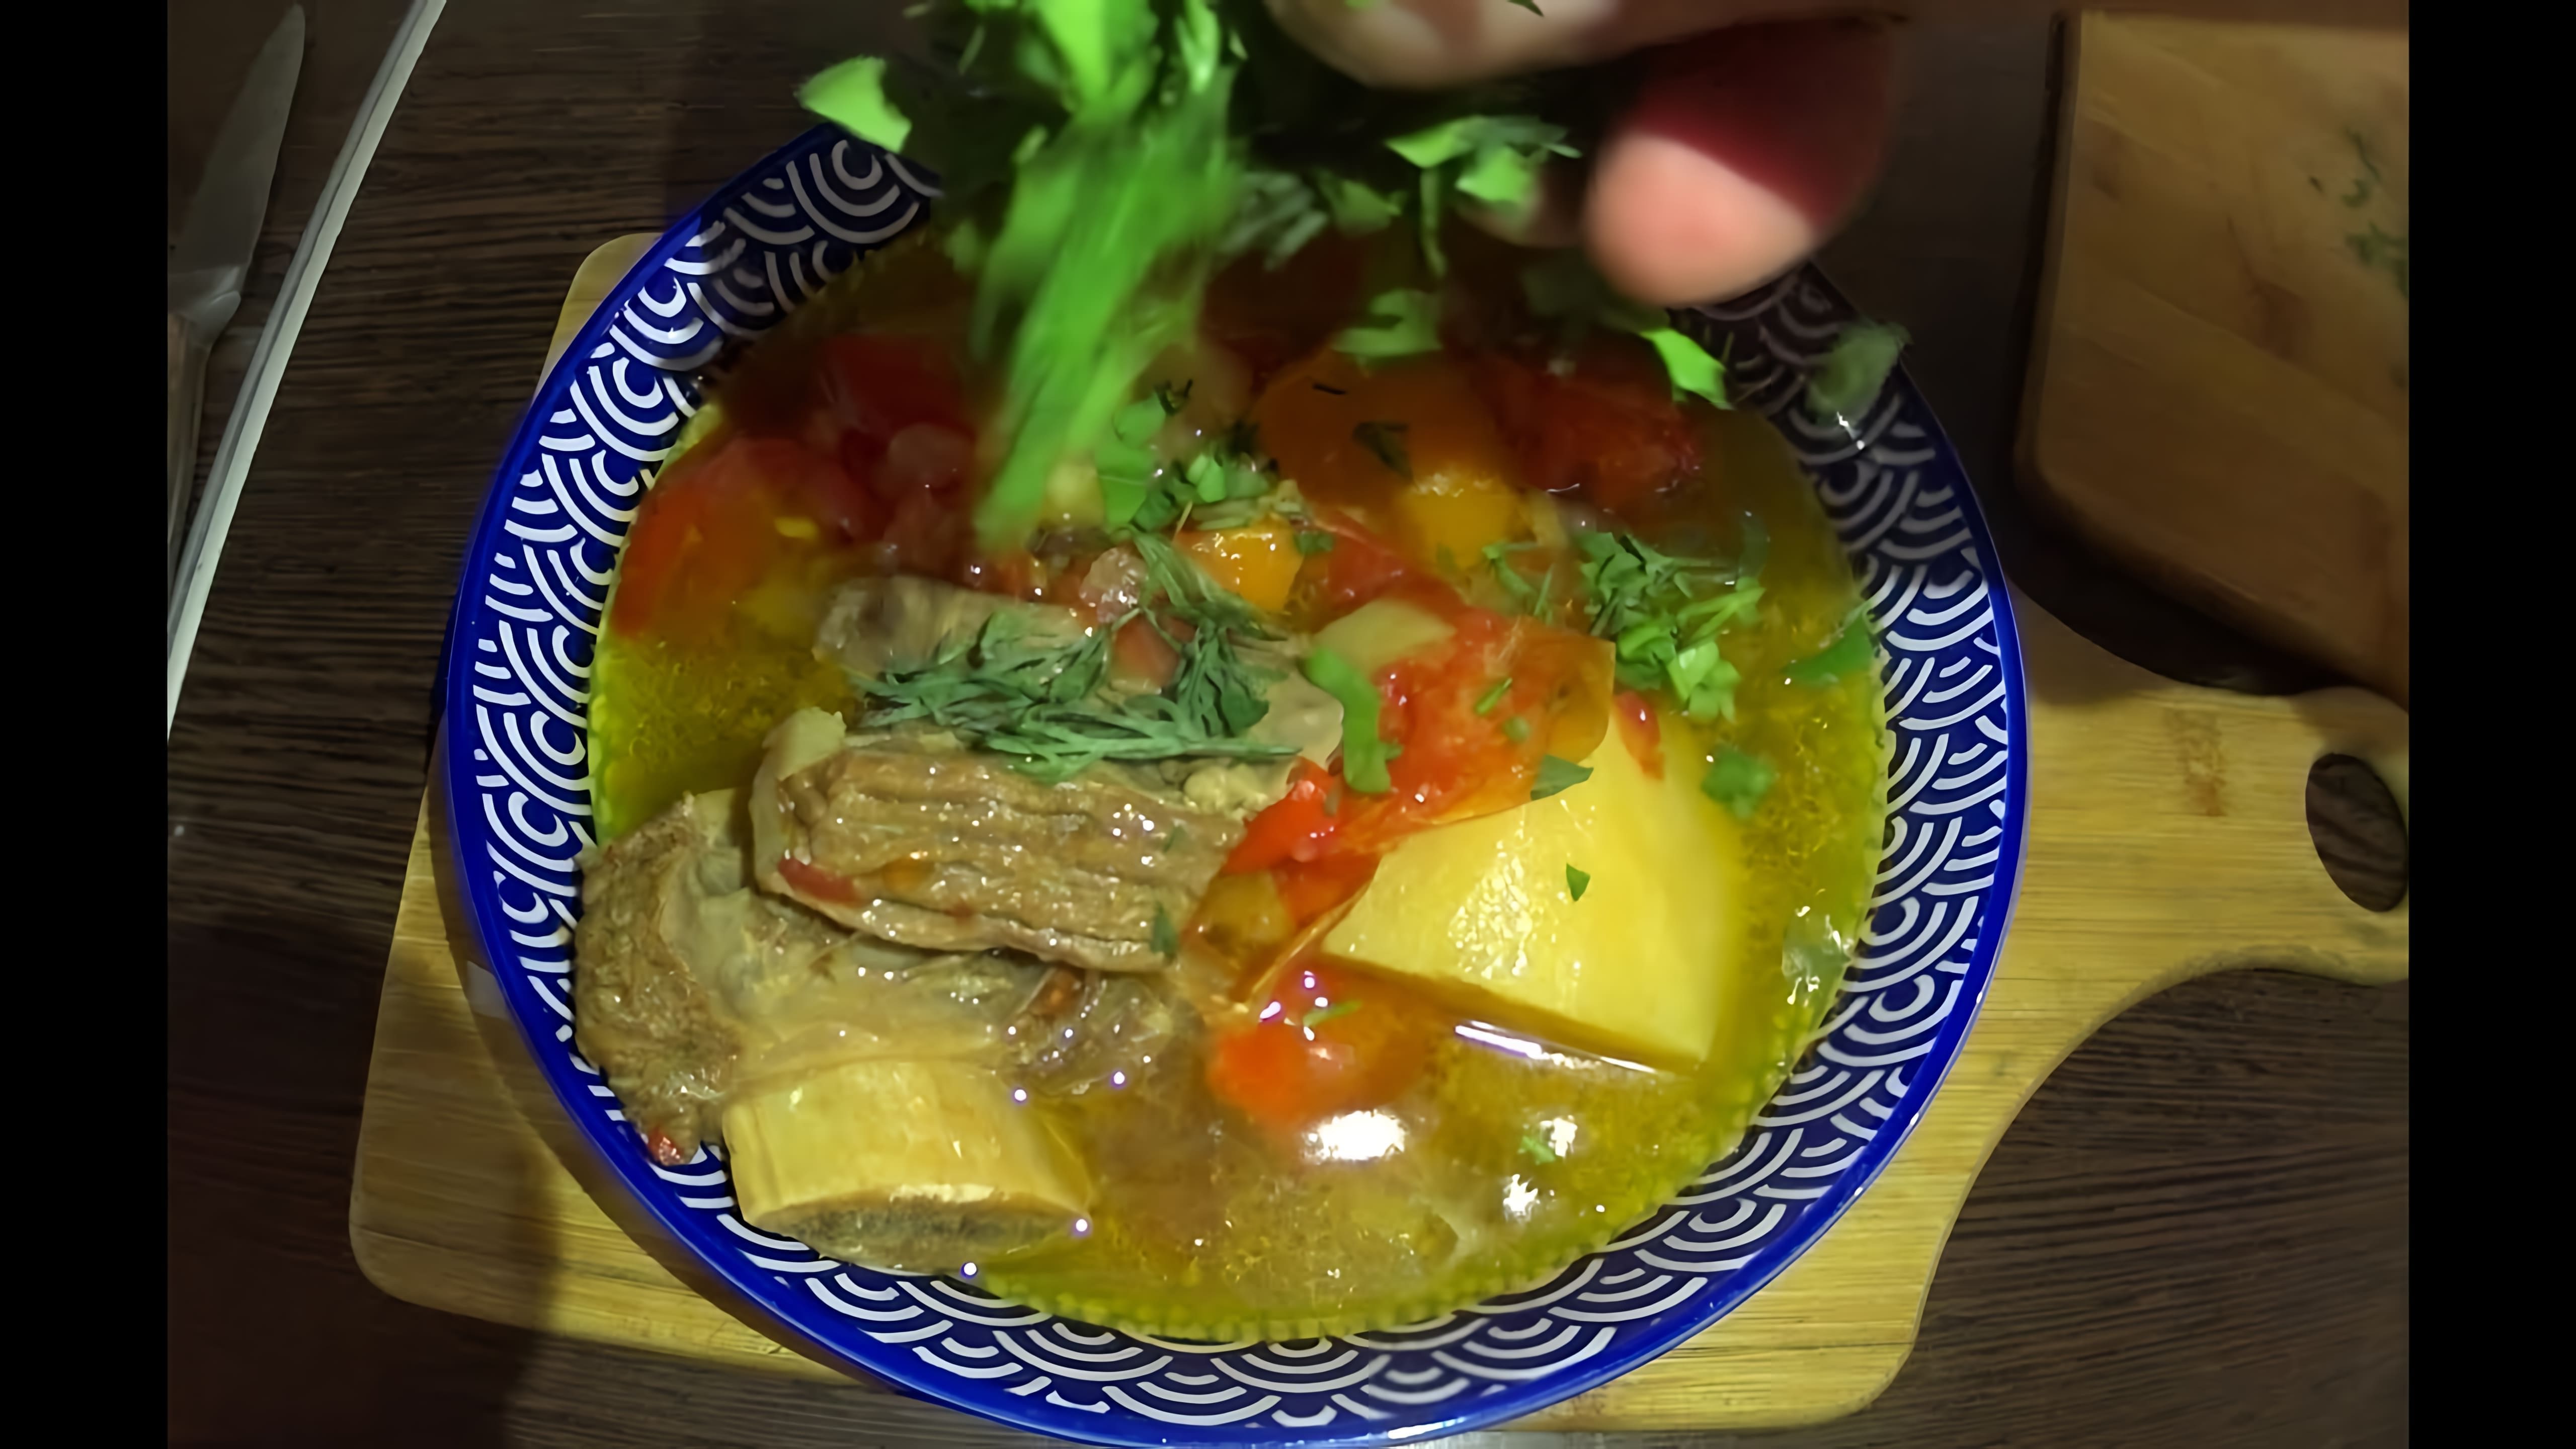 Видео рецепт афганского шурпа, мясного рагу, готовящегося в афганском котле или казане